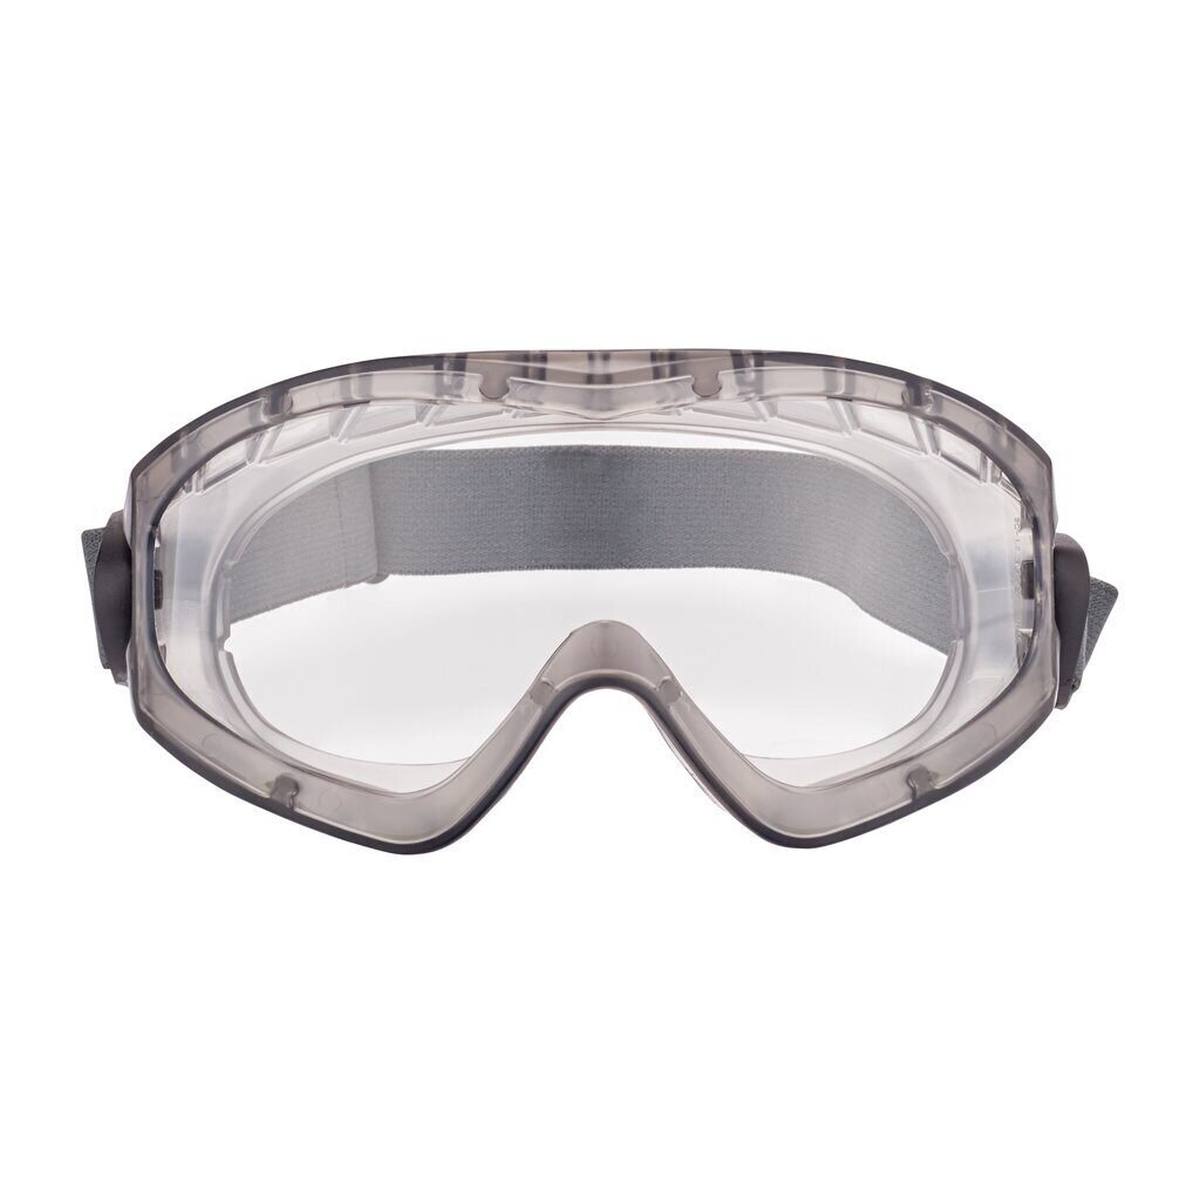 3M 2891S-SGAF Gafas de visión total, sin ranura de ventilación (herméticas a los gases), bisagras ajustables, revestimiento antivaho